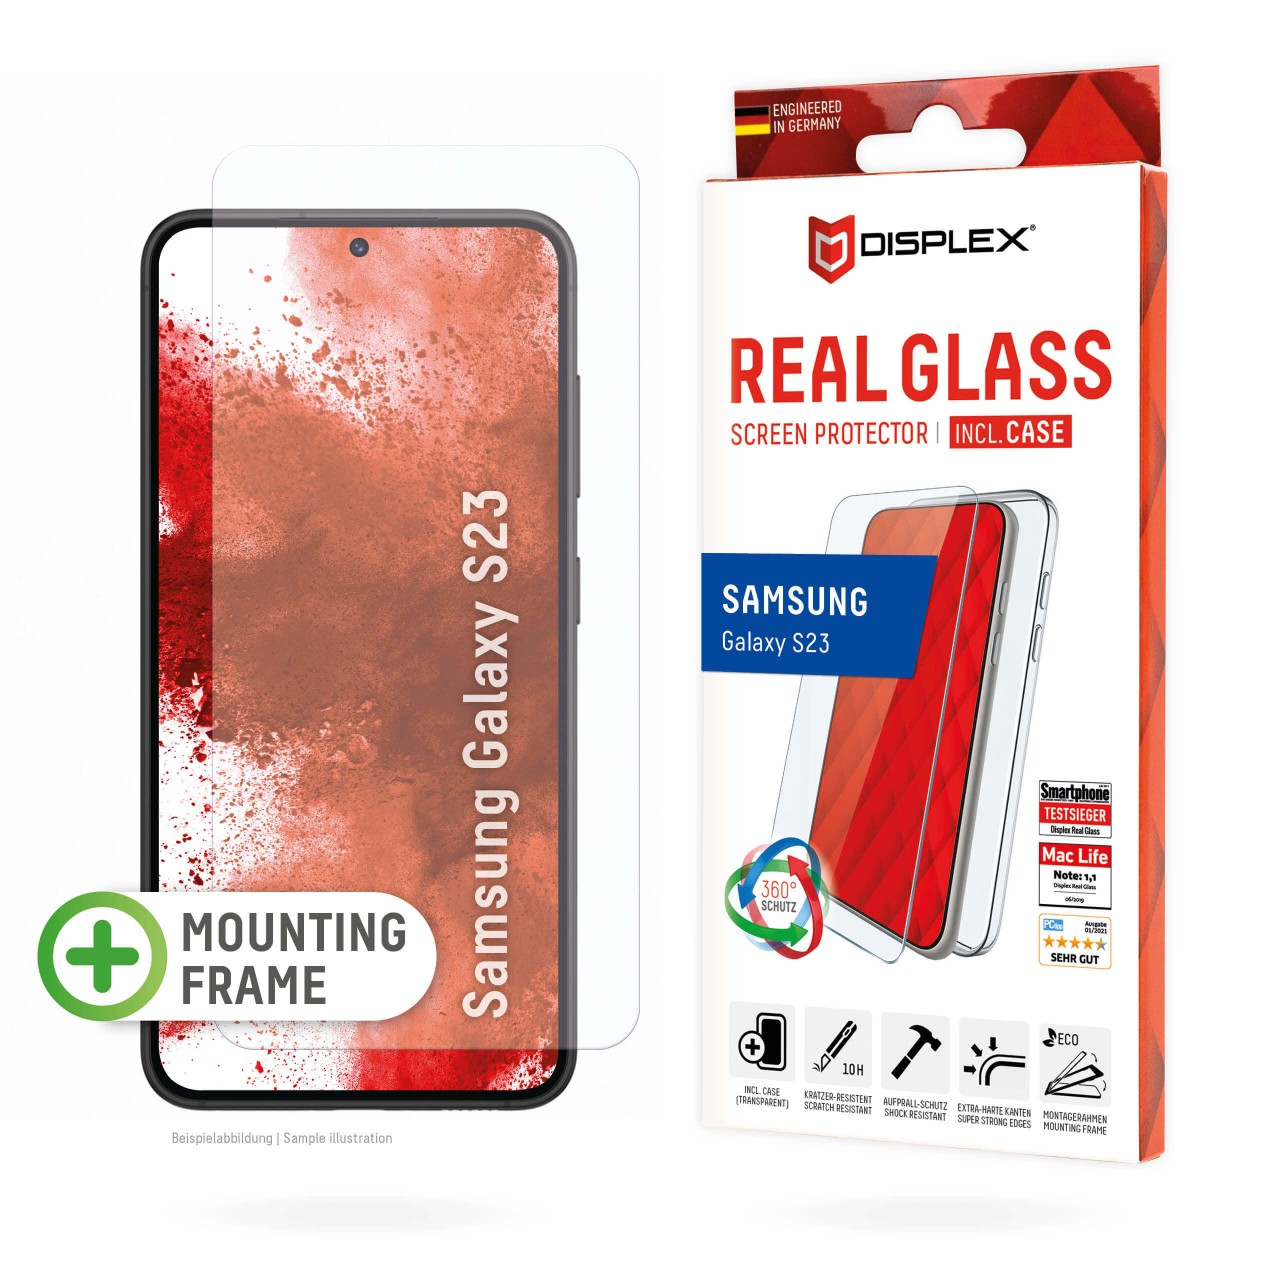 DISPLEX Glas + Case für Samsung Galaxy S22/S23